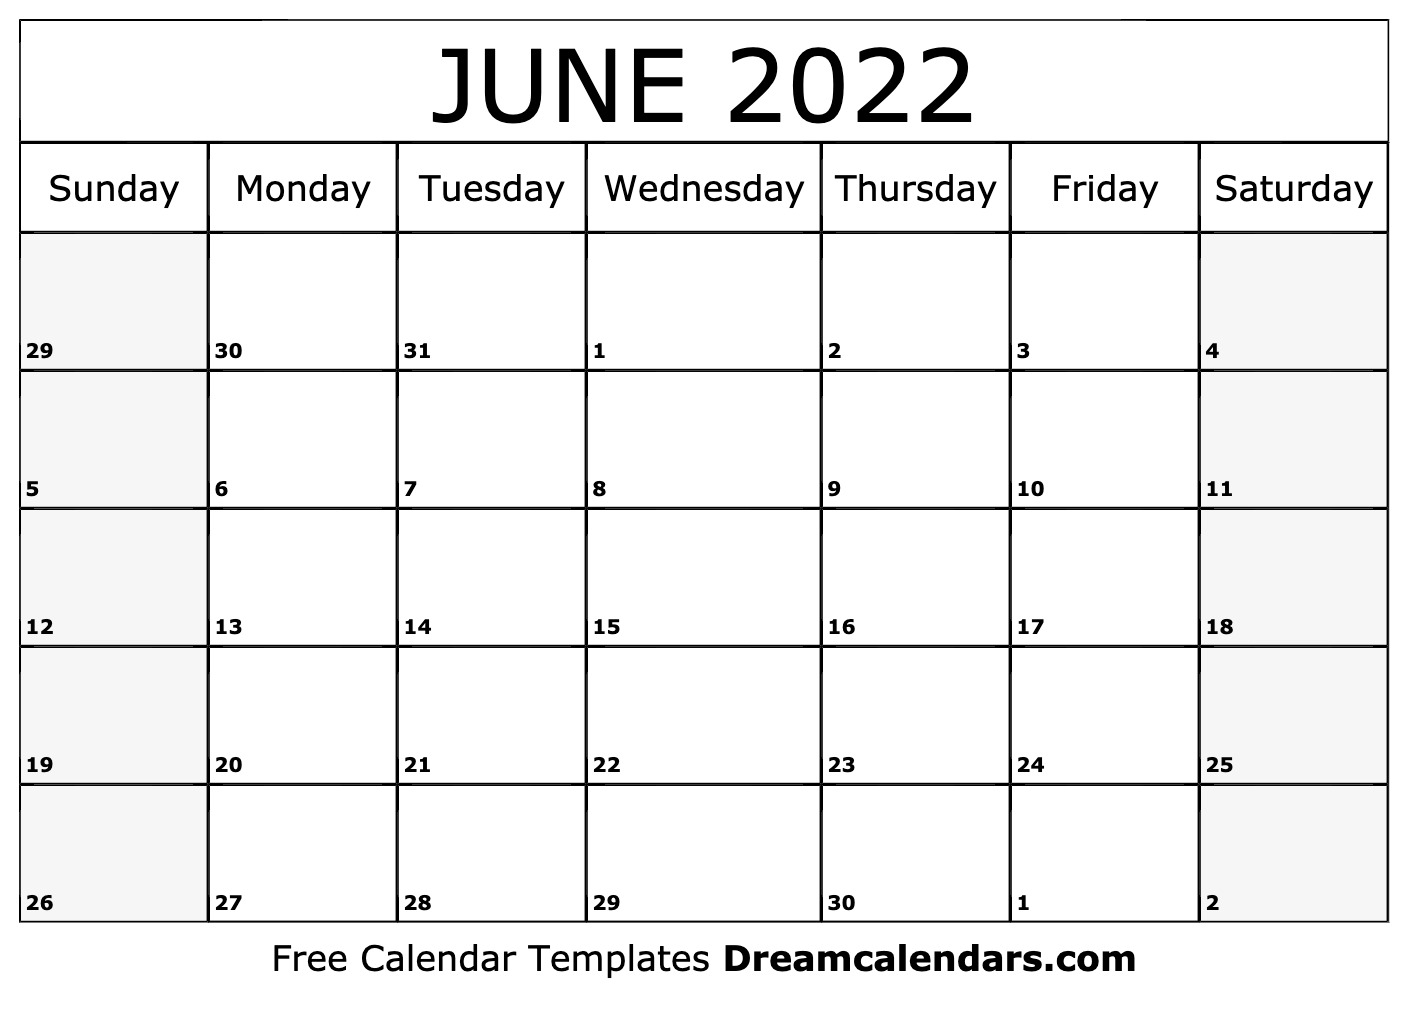 Get August 25 2022 Calendar